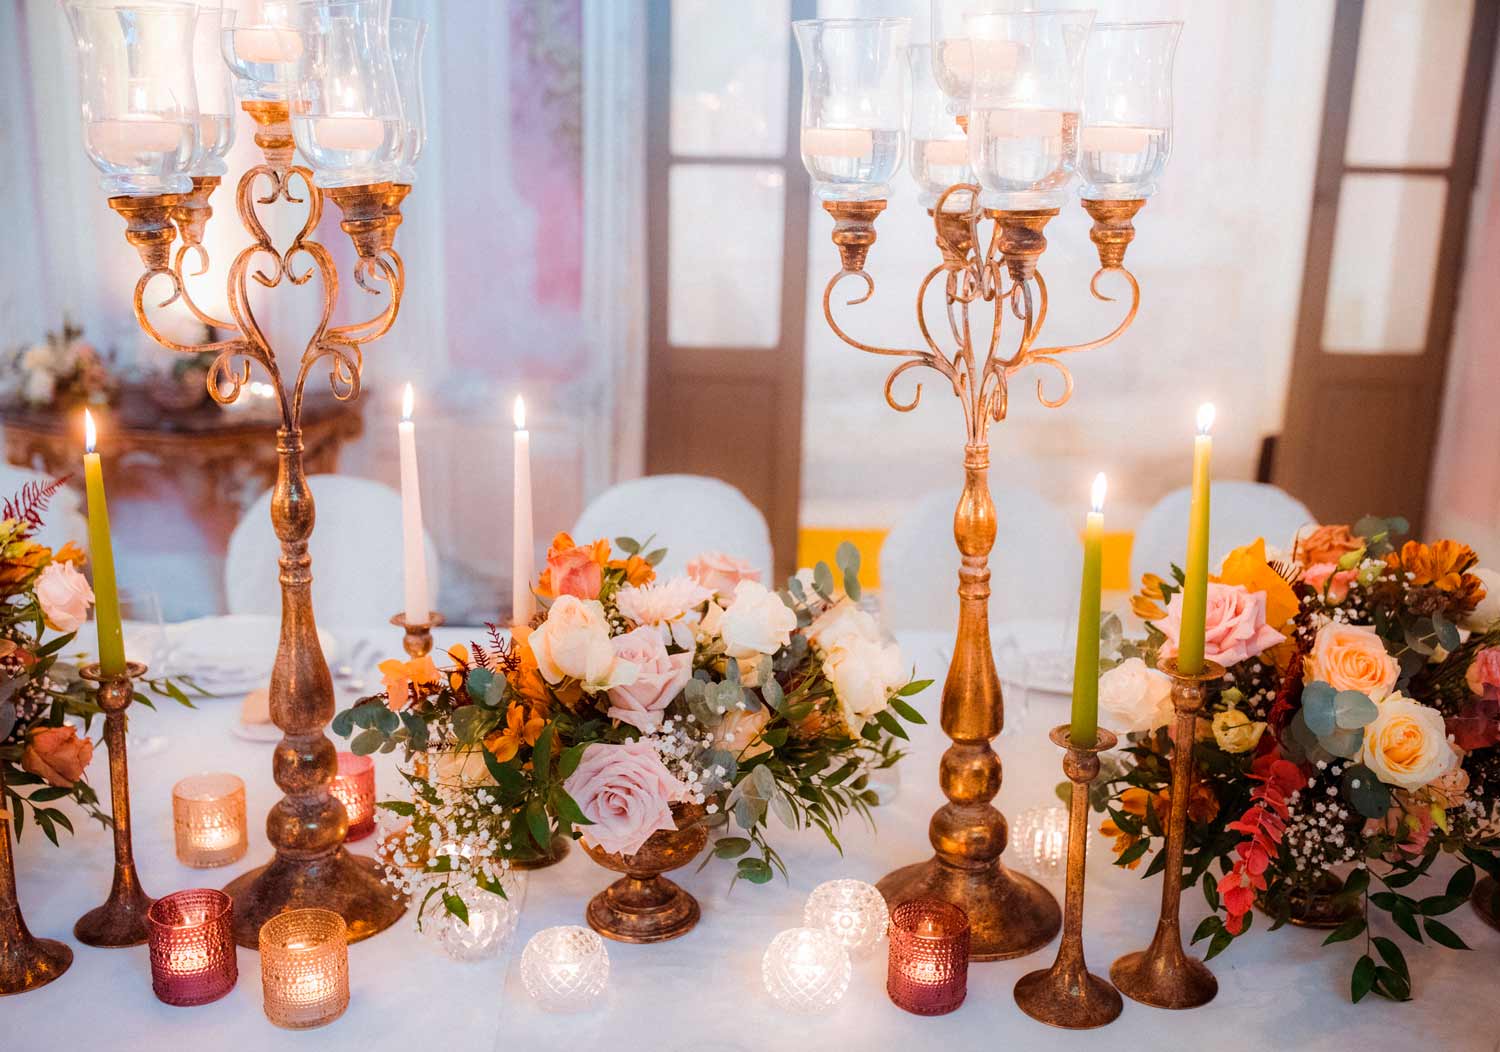 Mise en place wedding |Scirocco Mediterranean Experience